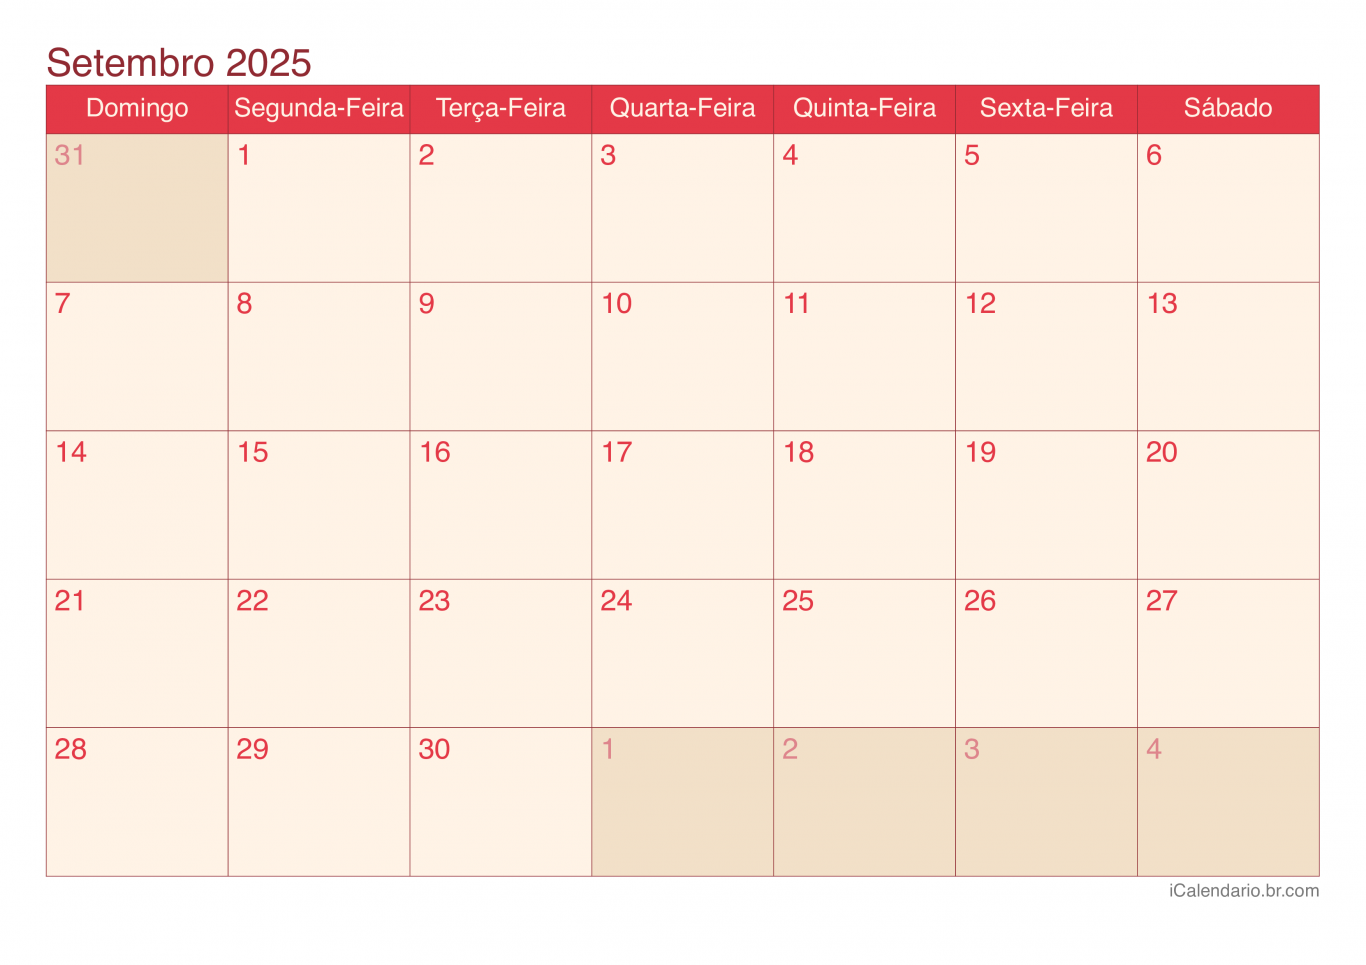 Calendário de setembro 2025 - Cherry